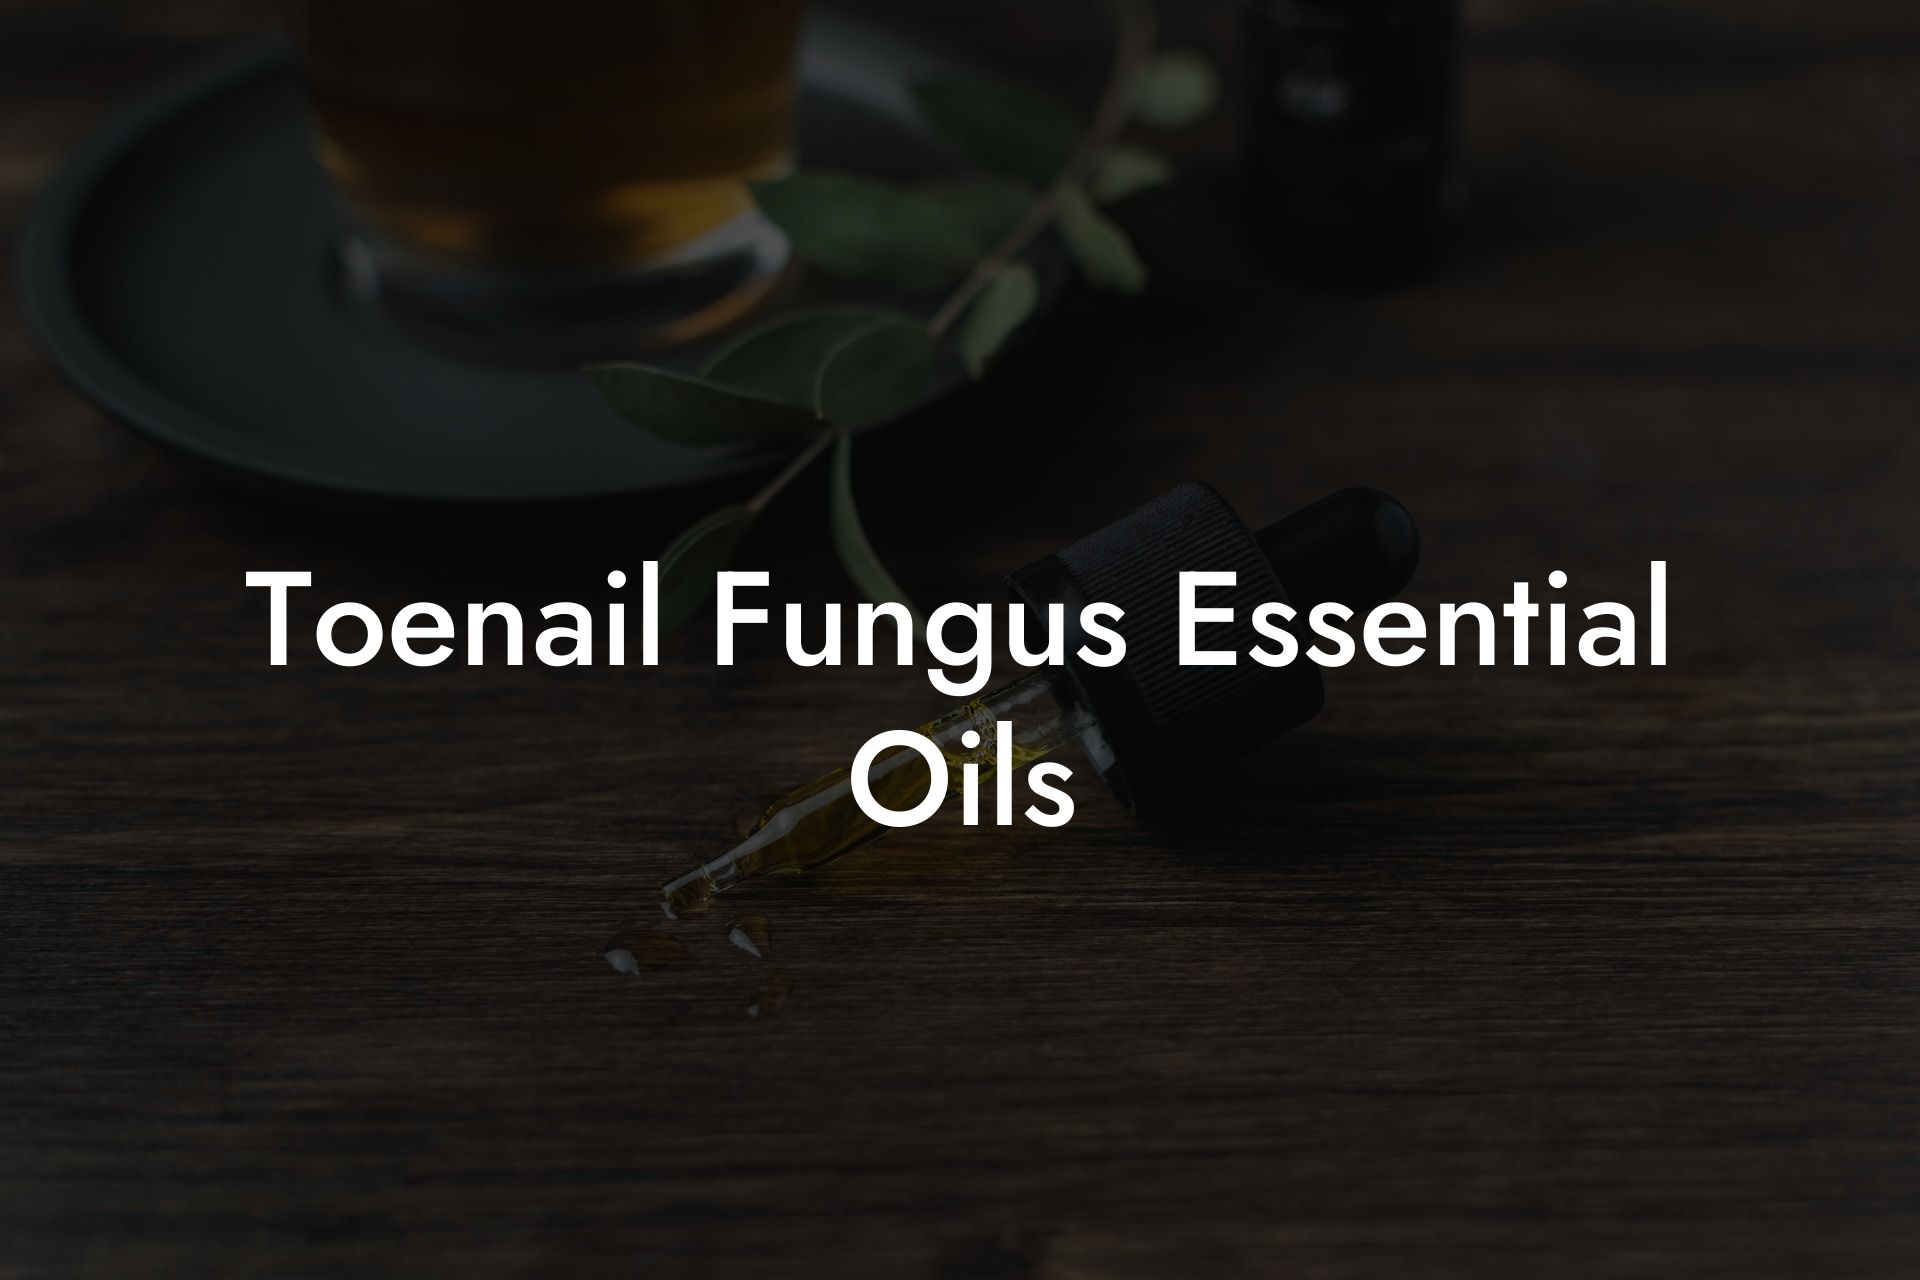 Toenail Fungus Essential Oils